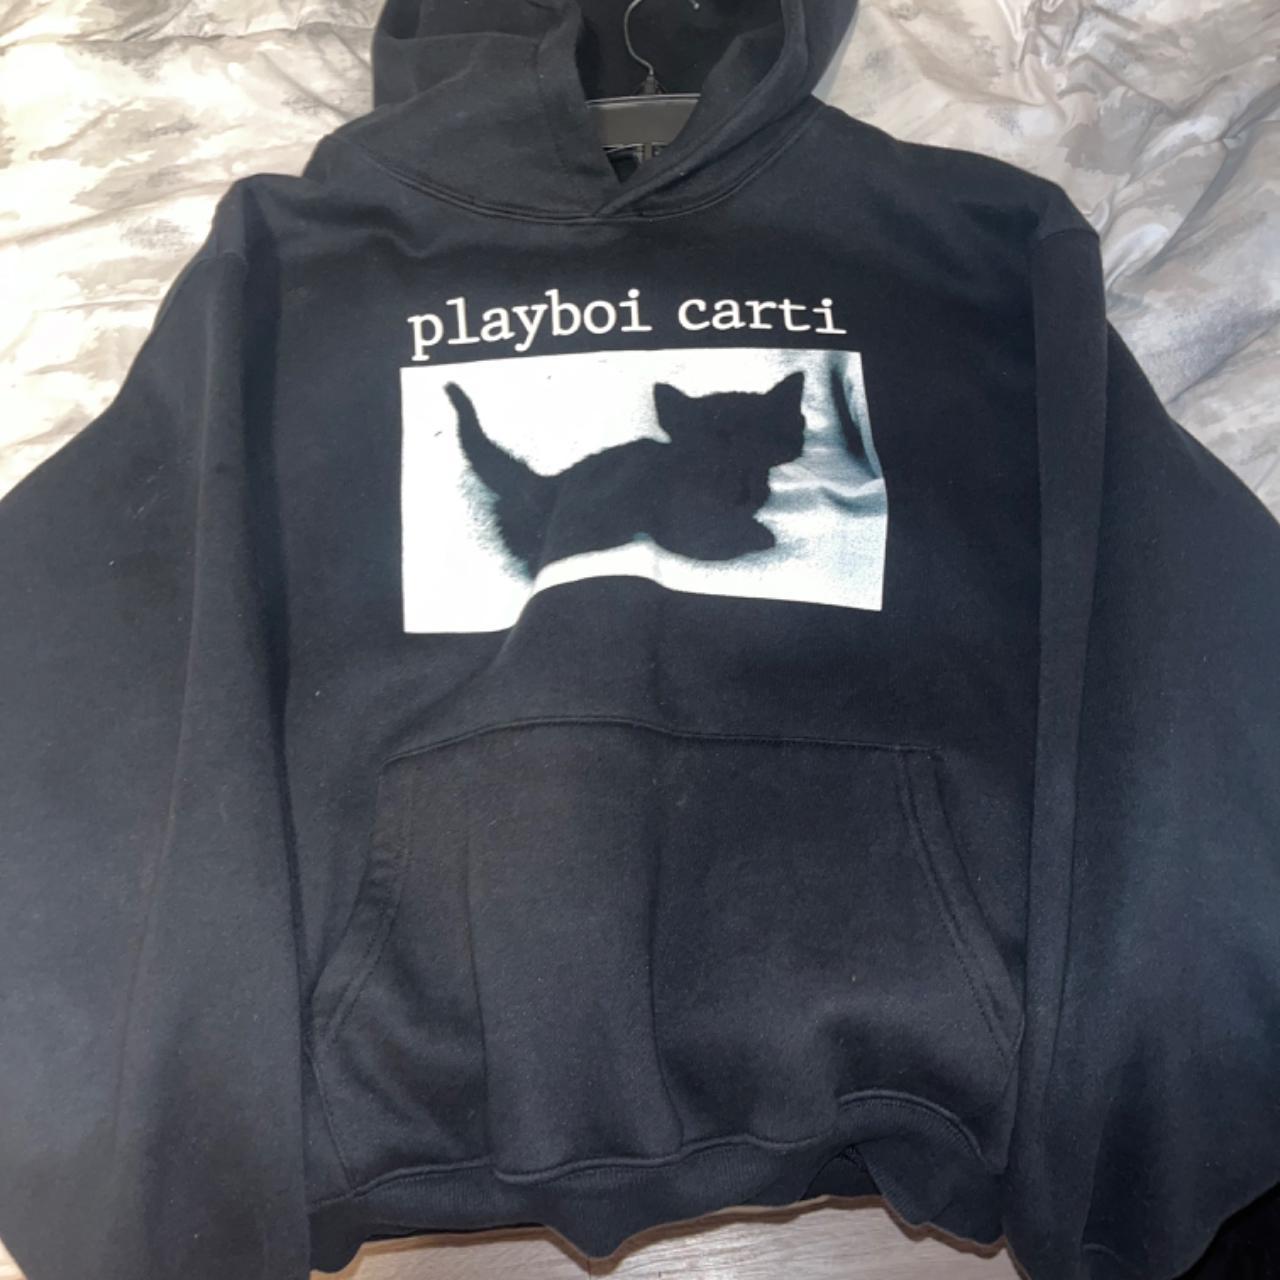 Playboy carti whole lotta red hoodie Good hoodie,... - Depop